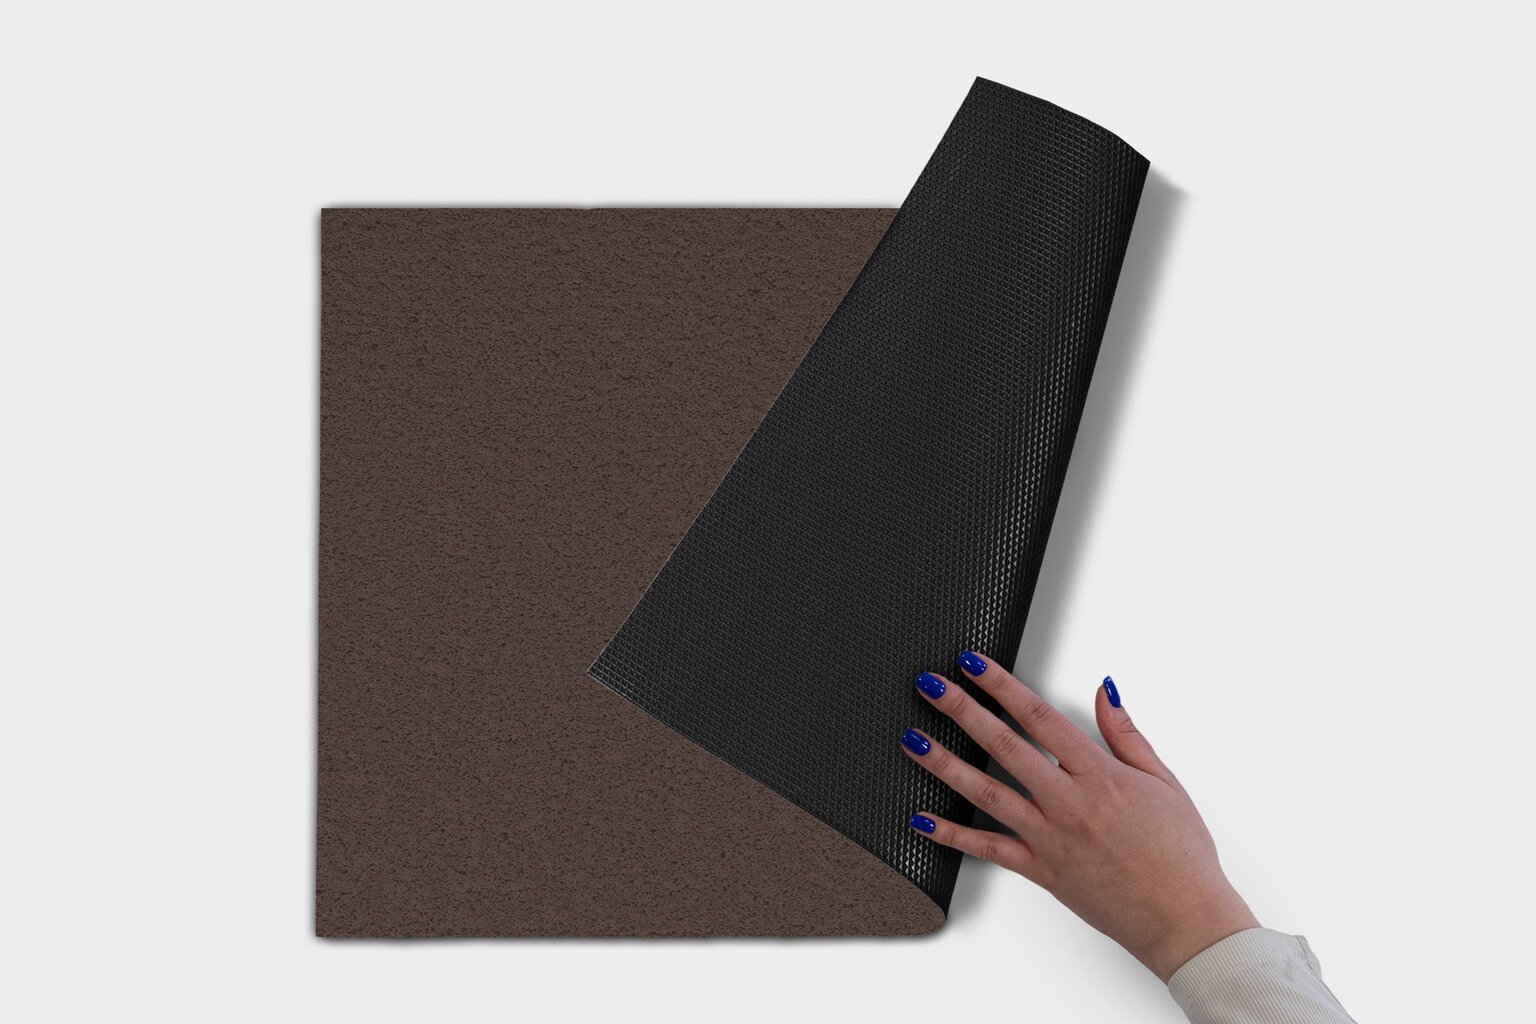 Durų kilimėlis Šokoladas 60x40 cm kaina ir informacija | Durų kilimėliai | pigu.lt